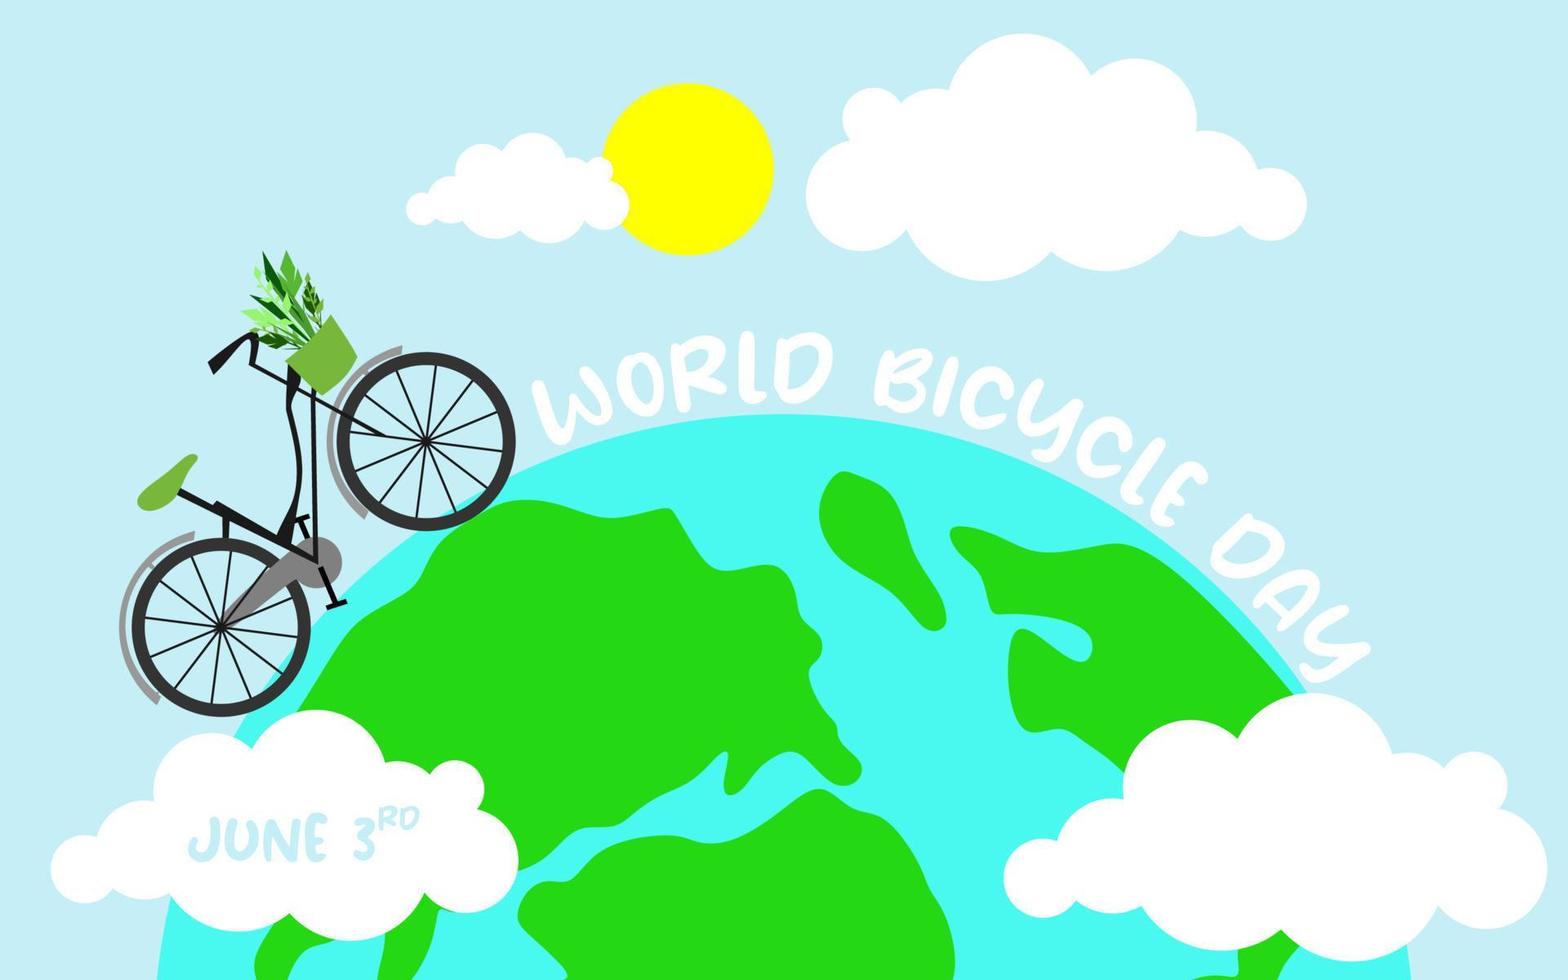 Diseño de plantilla del día mundial de la bicicleta del 3 de junio para banner, tarjetas de felicitación, logotipo, mnemotécnico, símbolo, icono, etiqueta, banner o ilustración vectorial de diseño de afiches vector